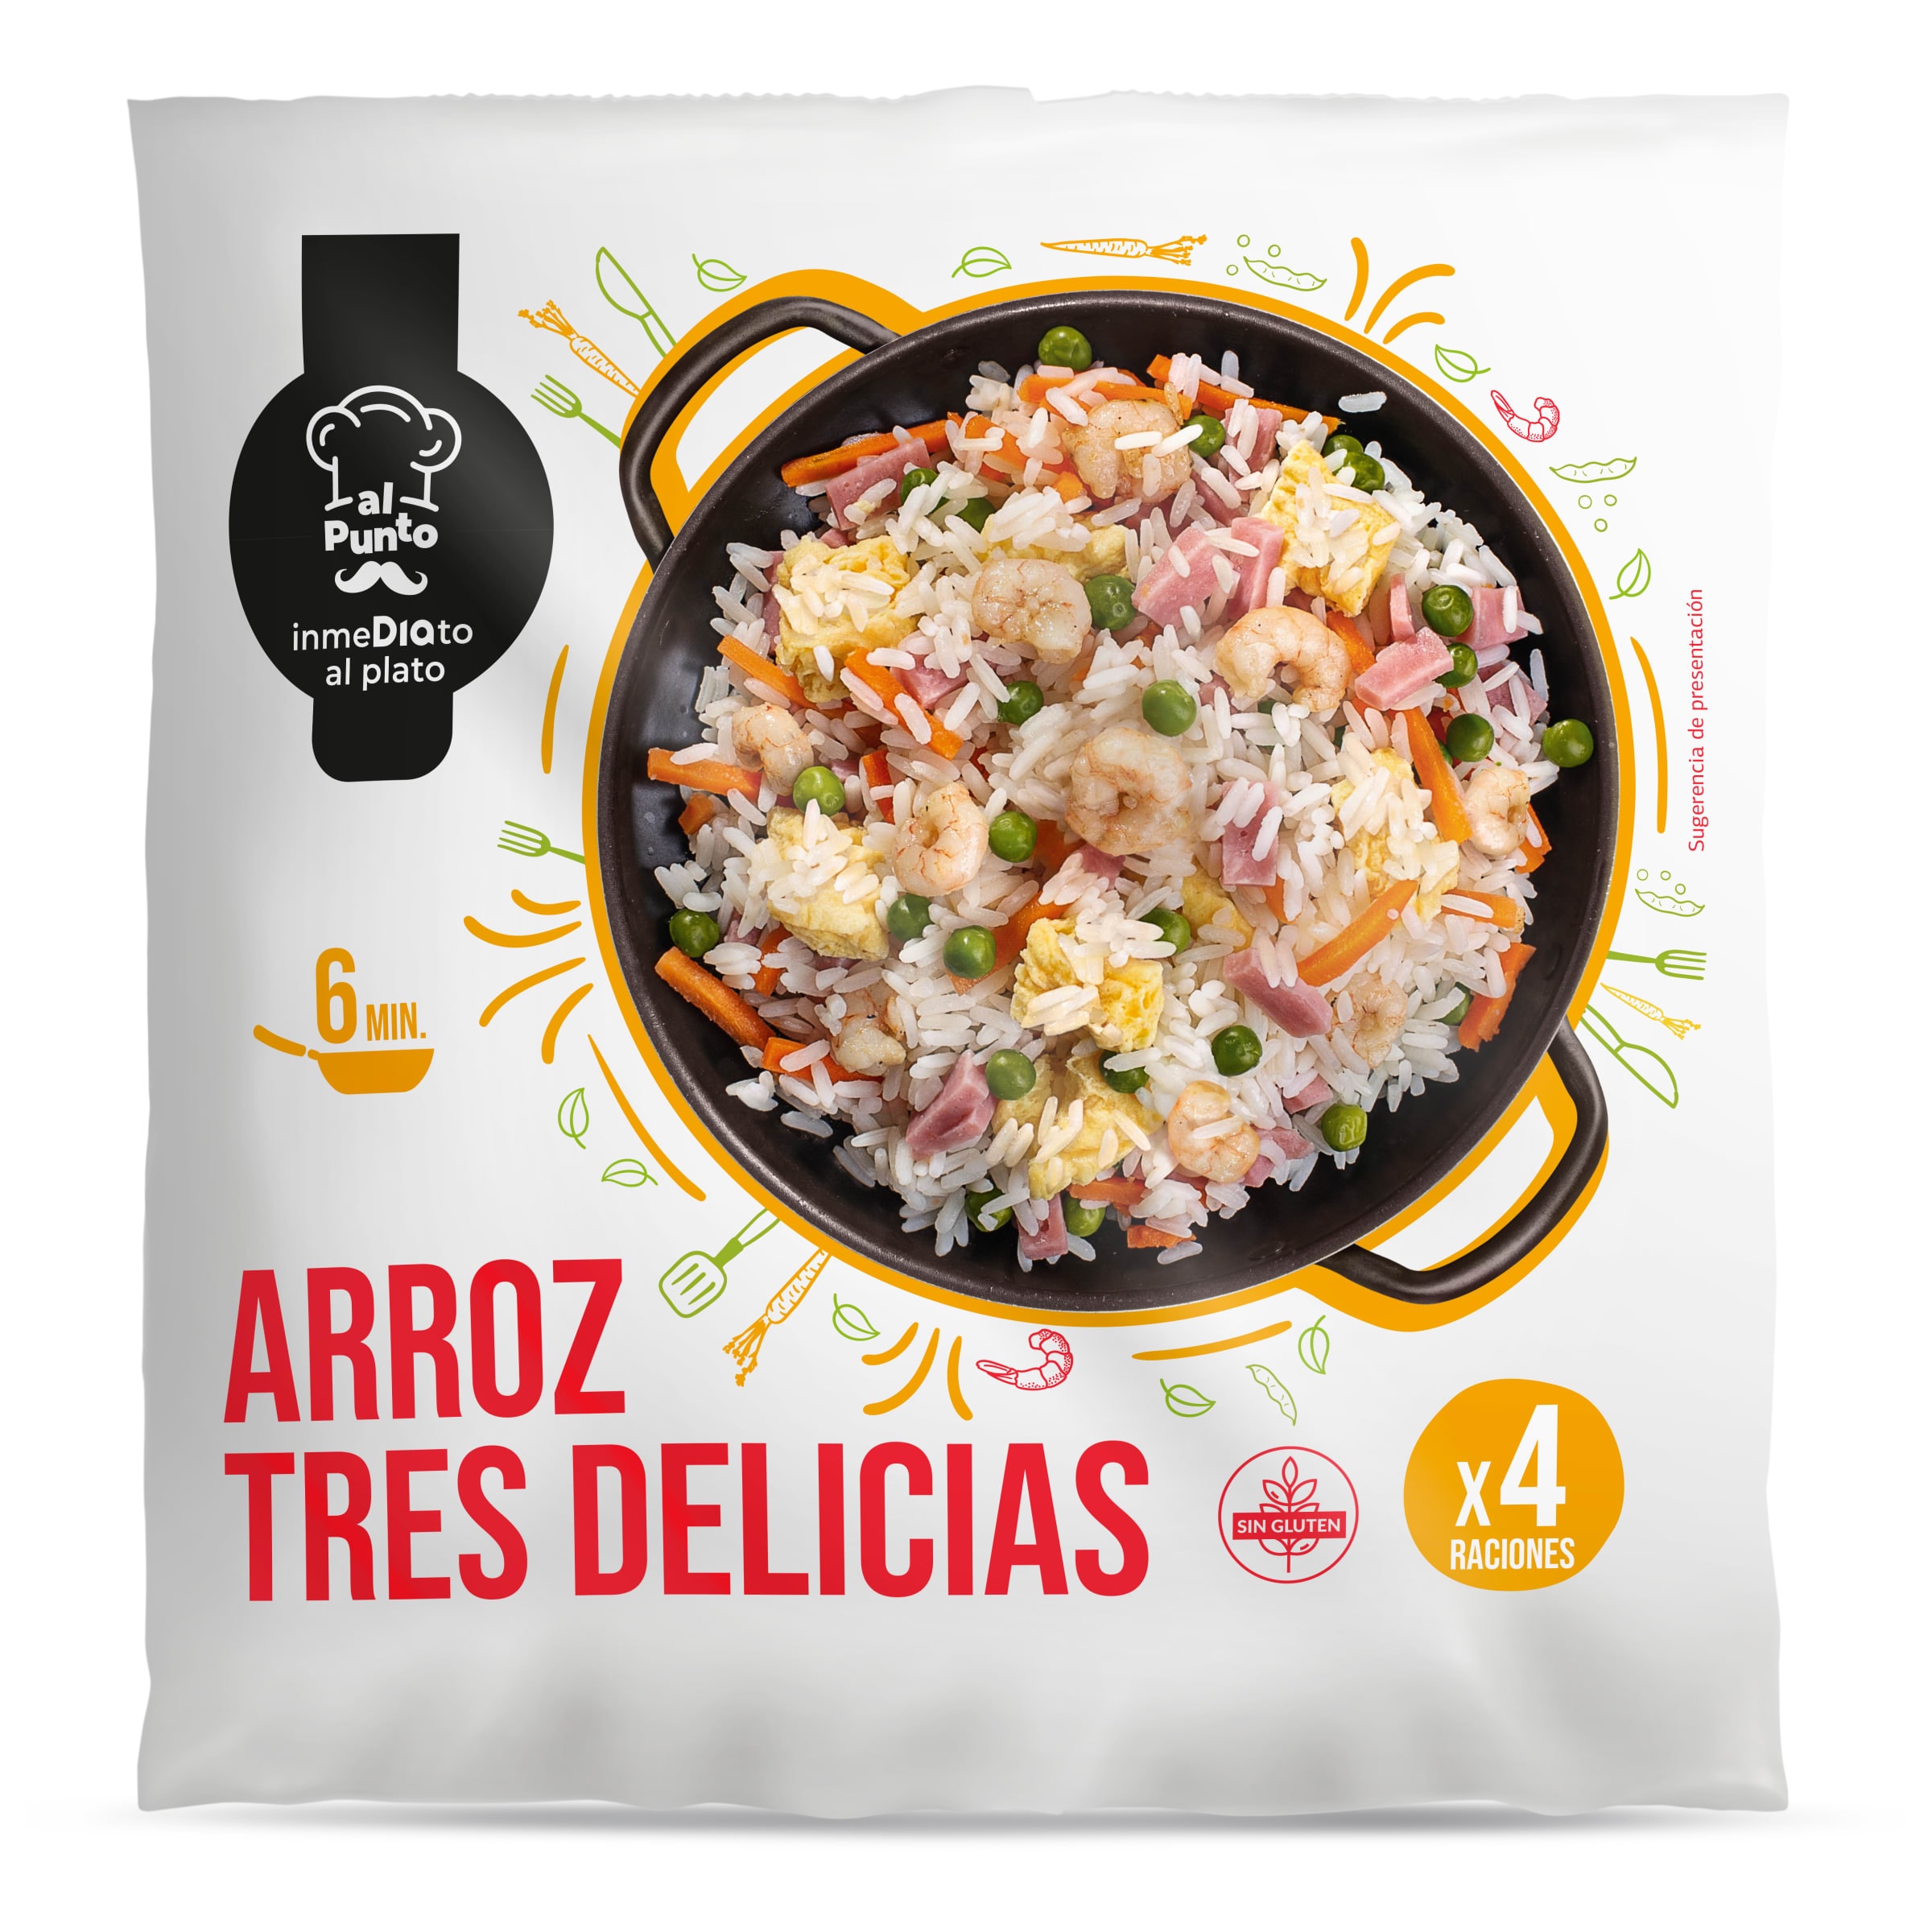 Arroz tres delicias AL PUNTO BOLSA 850 GR - Supermercados DIA